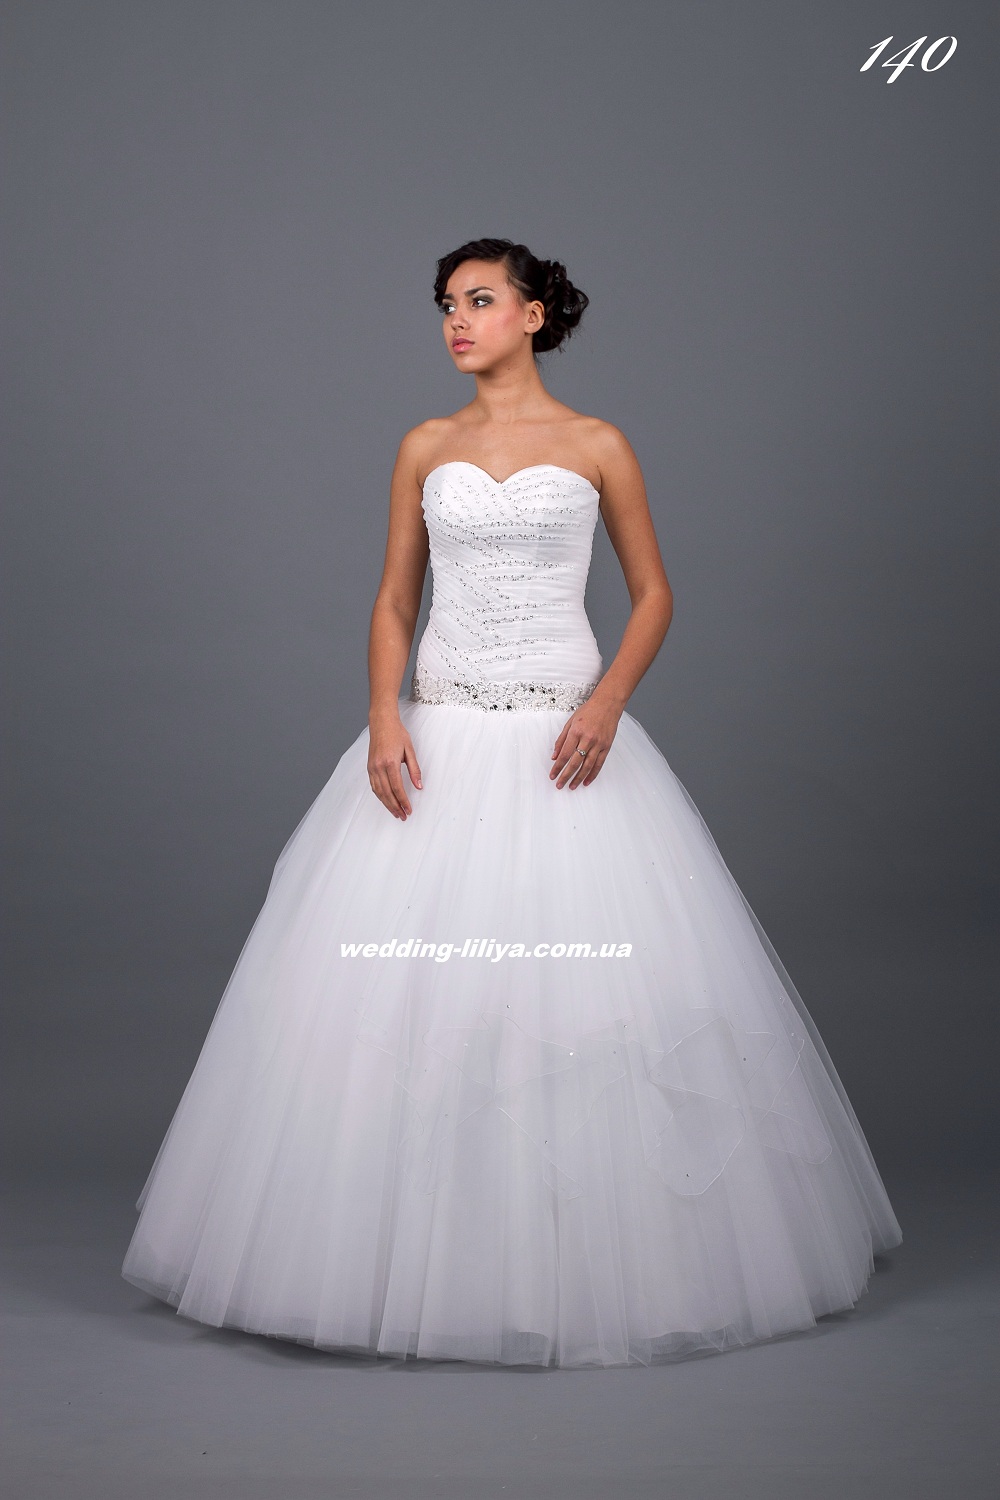 Свадебное платье №140